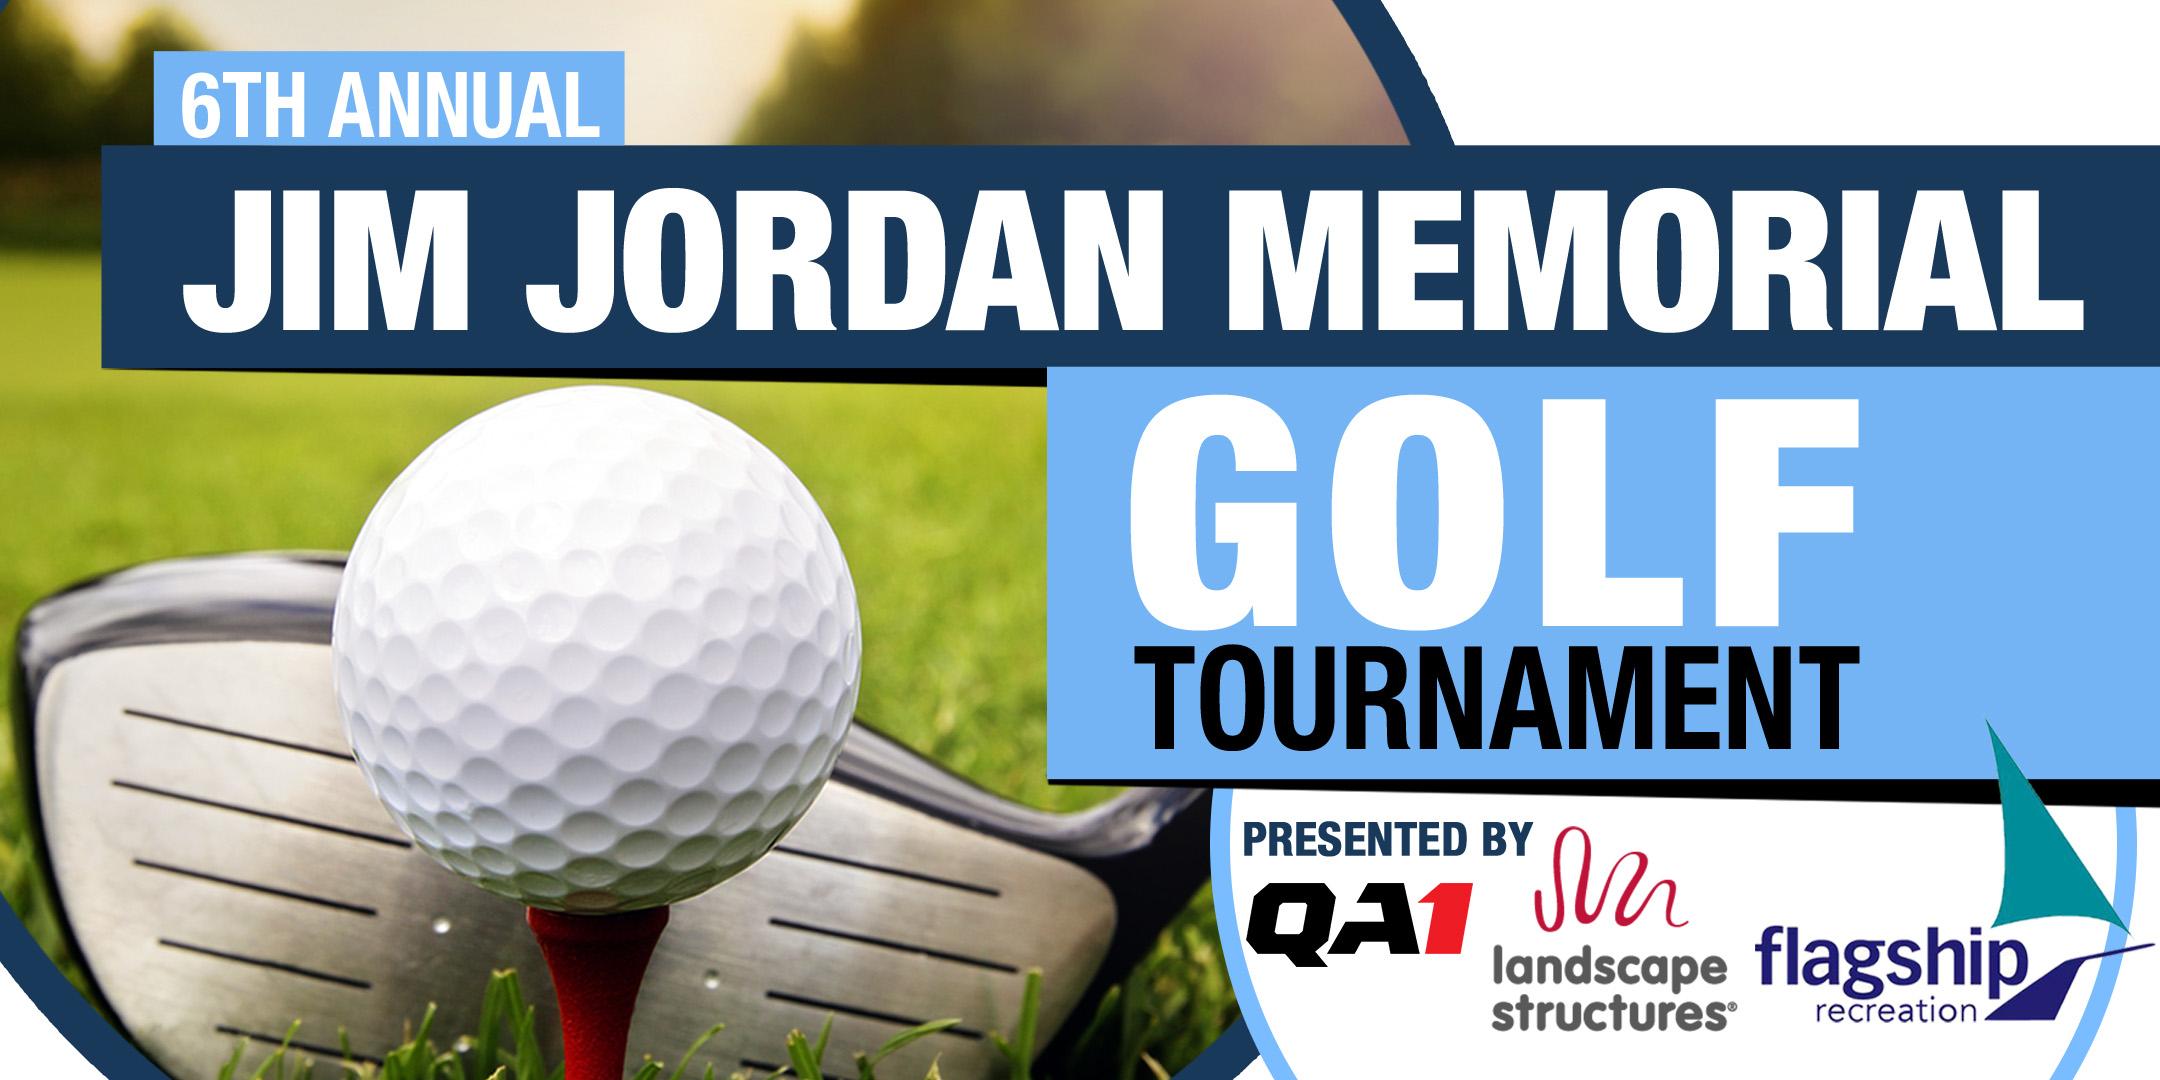 6th Annual Jim Jordan Memorial Golf Tournament - By QA1 and Flagship